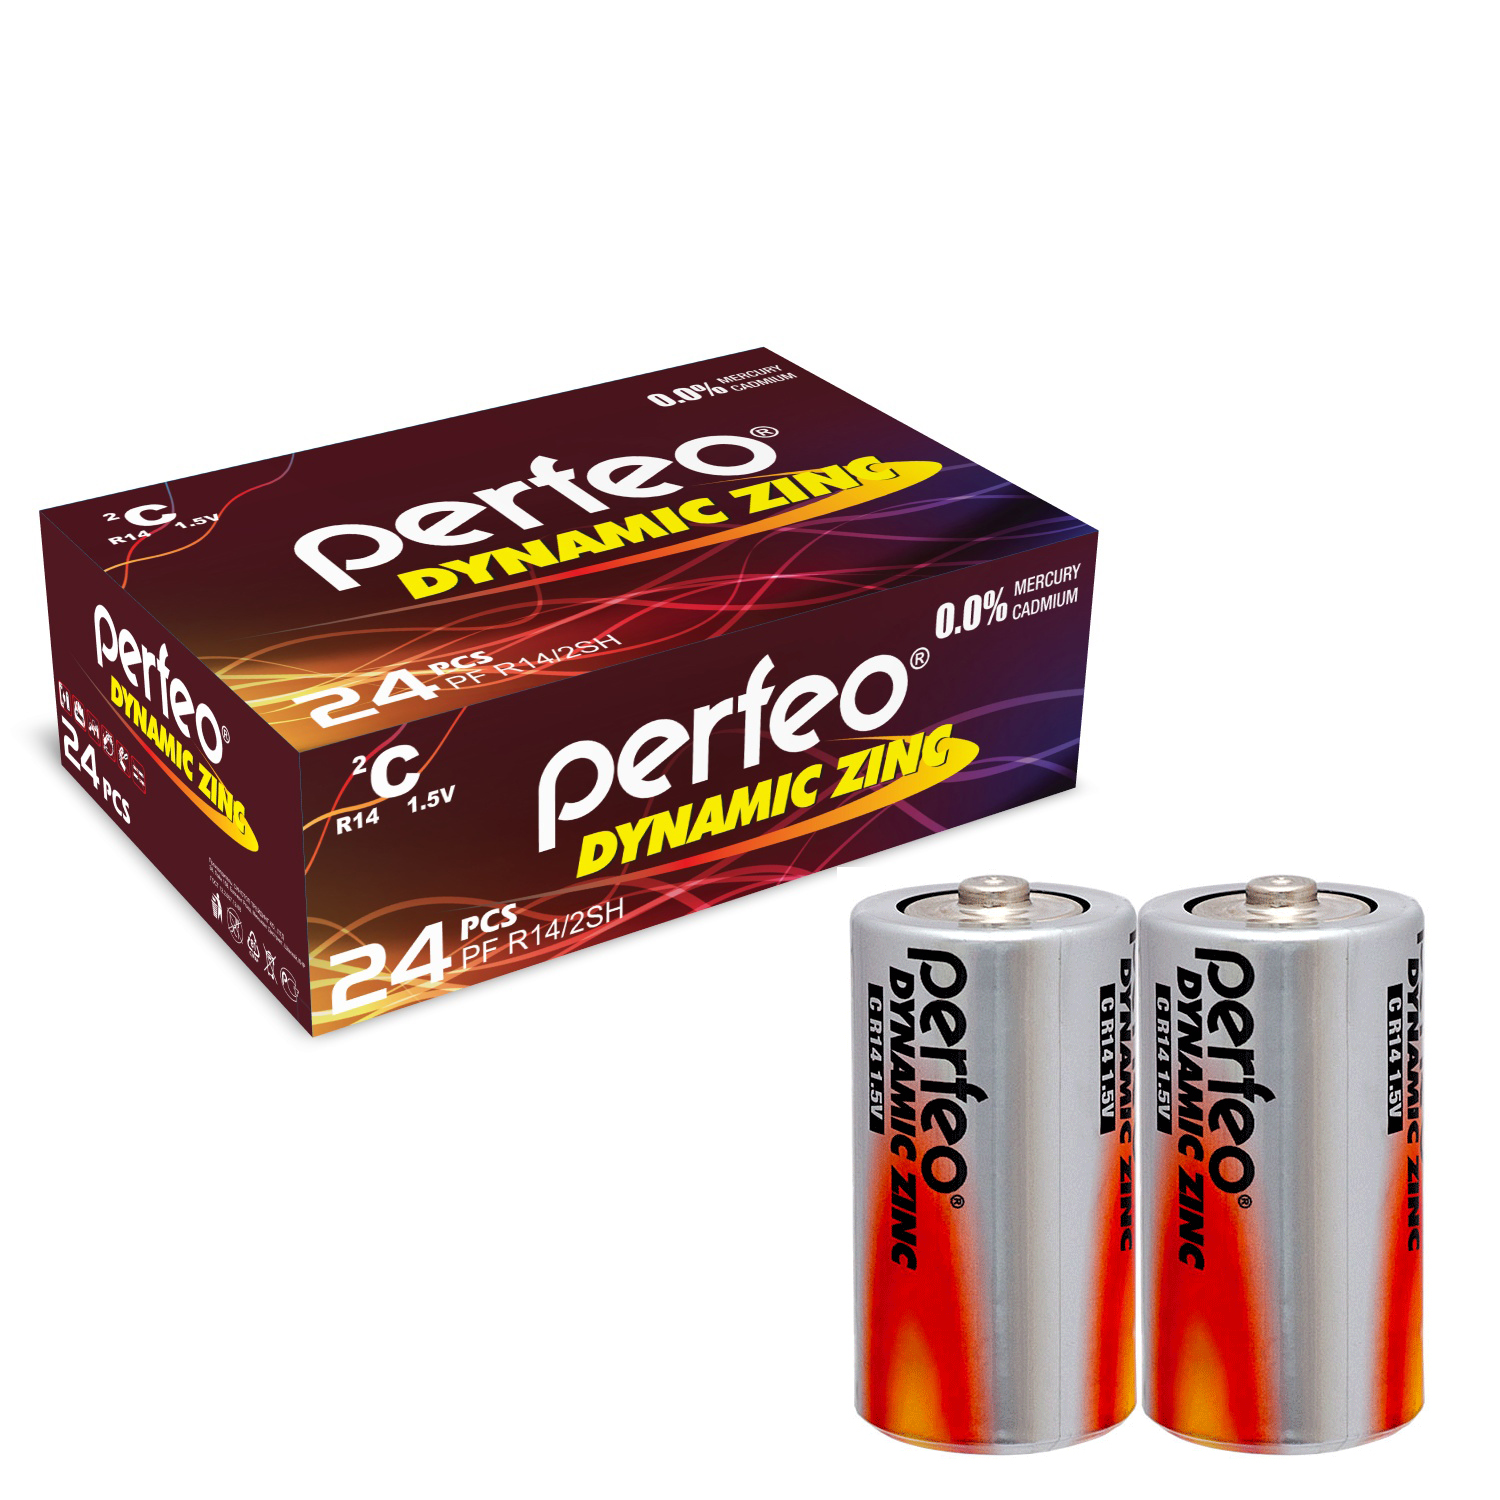 Батарейка Perfeo R14/2SH Dynamic Zinc 24 шт батарейки perfeo dynamic zinc ааа lr03 60 шт 15x4 шт